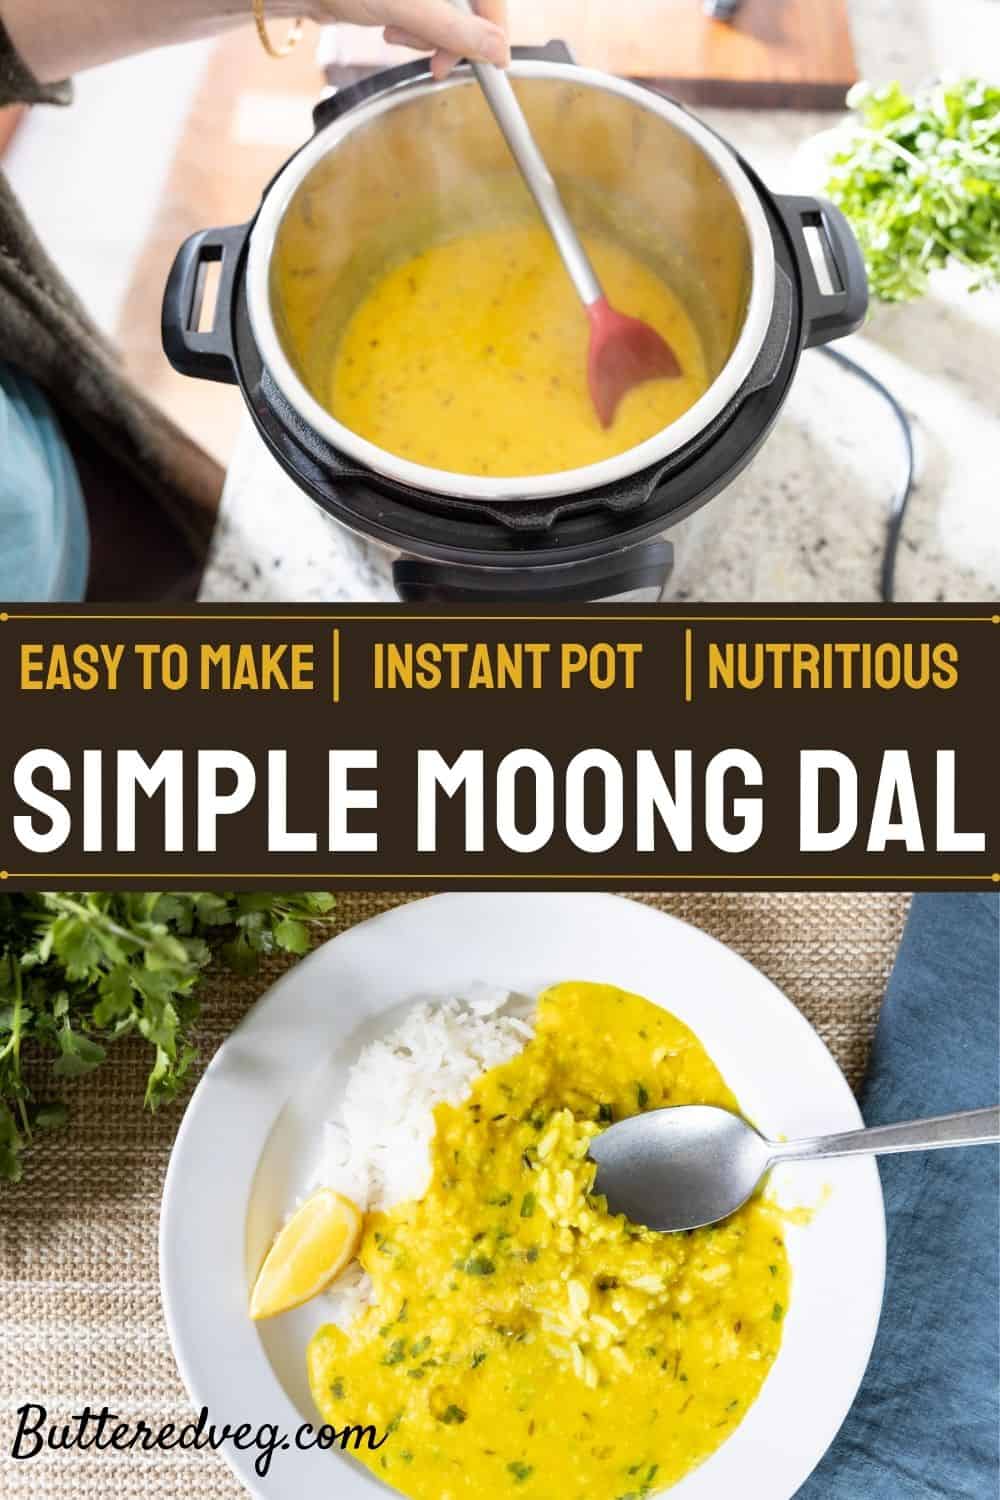 Simple Moong Dal Recipe (Instant Pot)